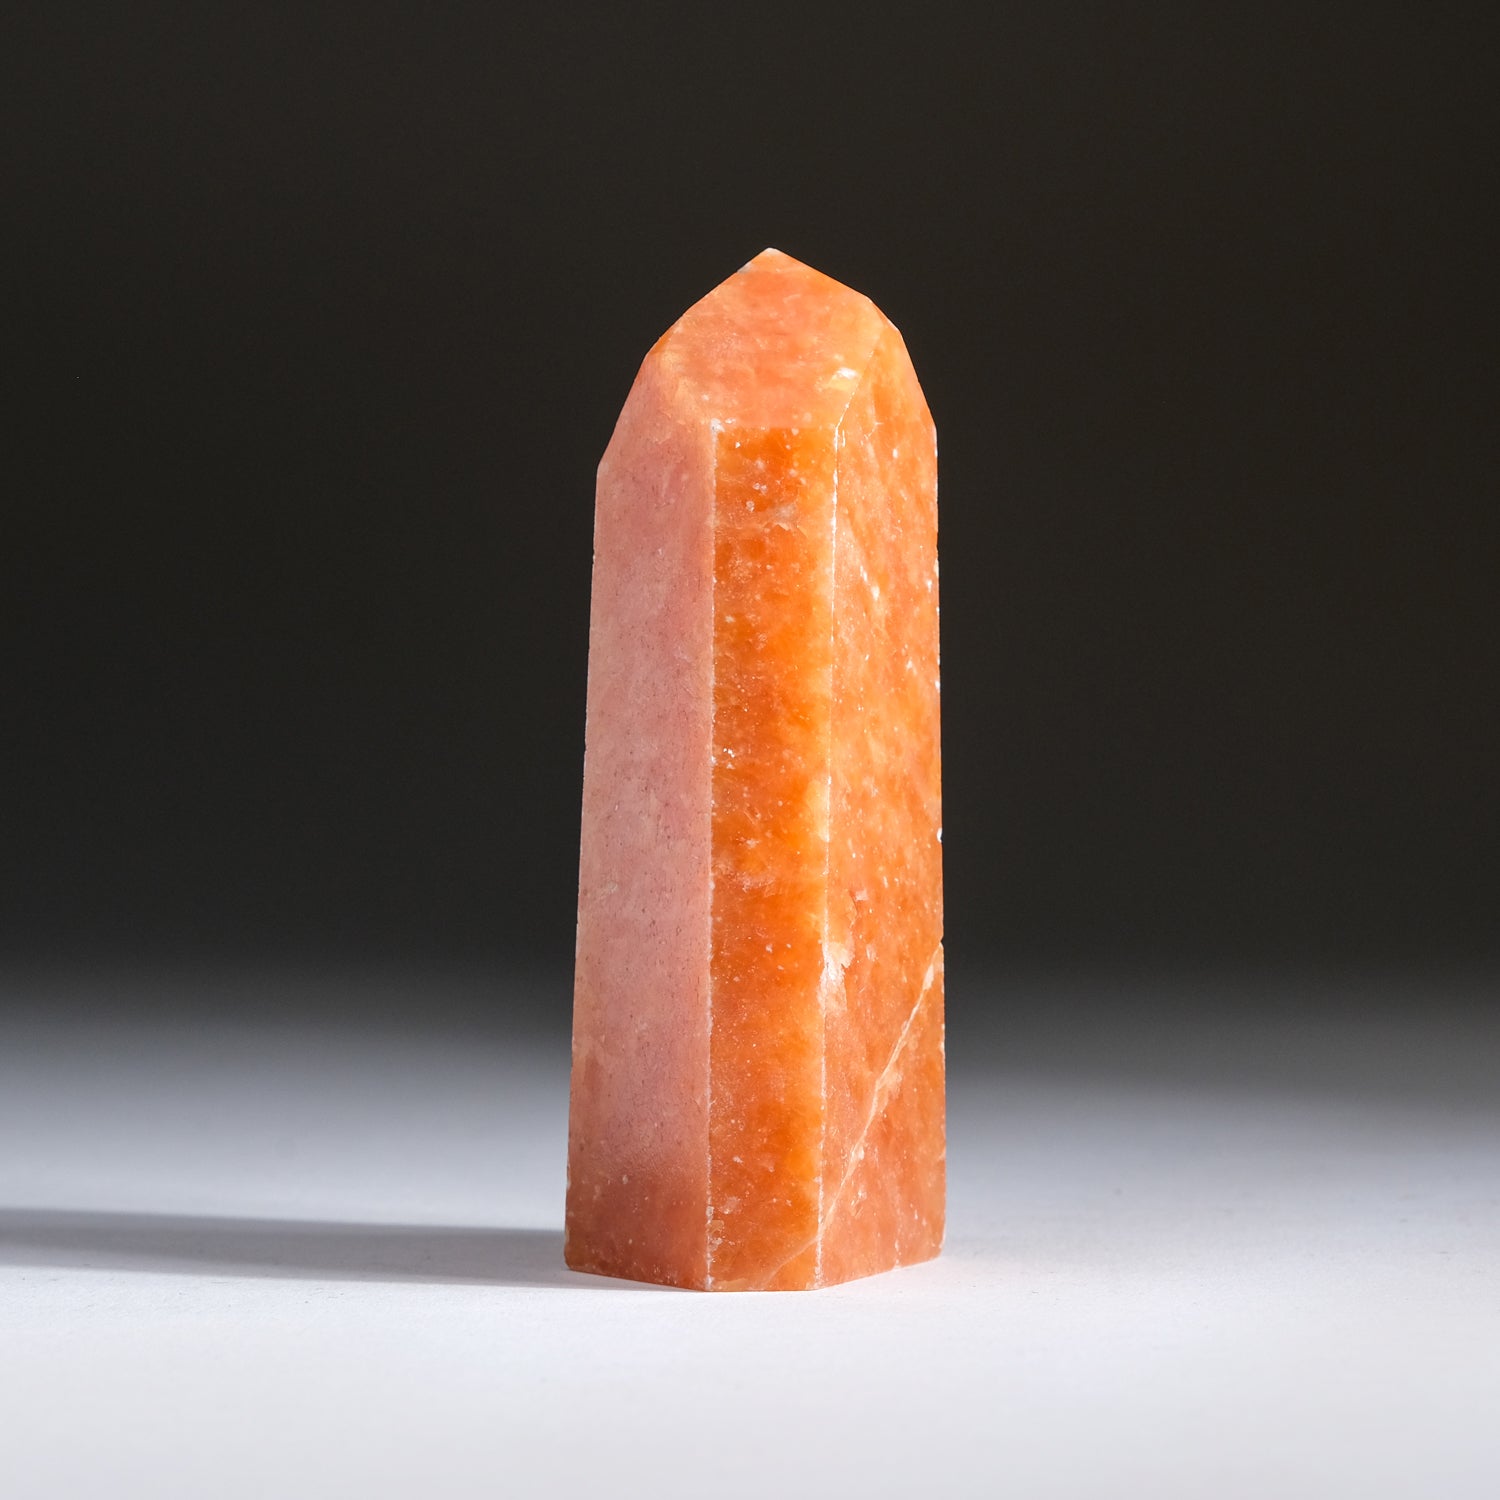 Tangerine Quartz Obelisk From Brazil (206.5 grams)